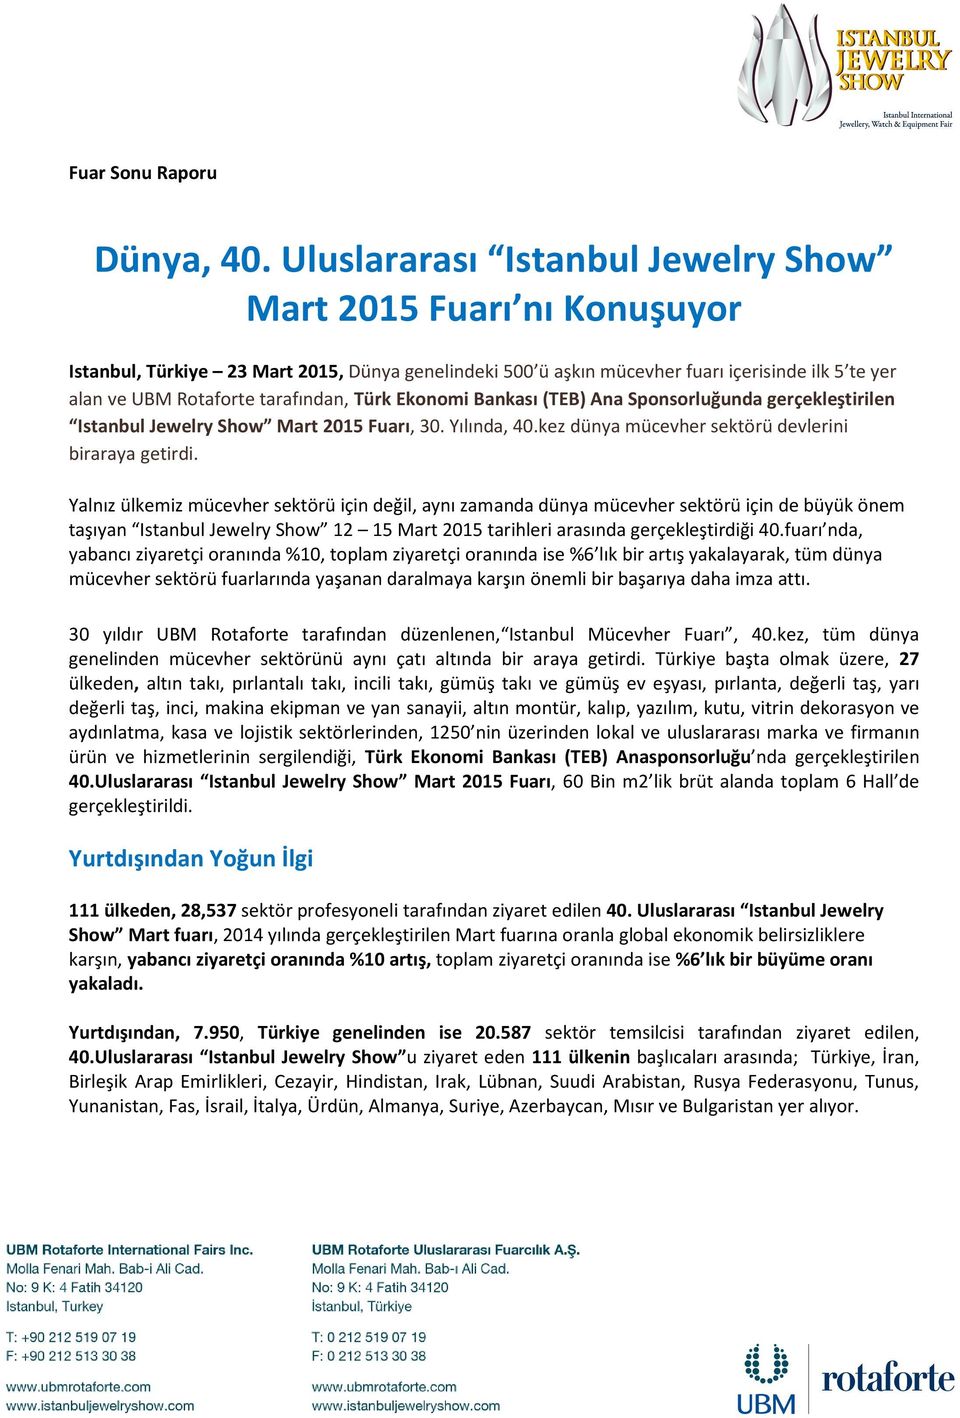 Türk Ekonomi Bankası (TEB) Ana Sponsorluğunda gerçekleştirilen Istanbul Jewelry Show Mart 2015 Fuarı, 30. Yılında, 40.kez dünya mücevher sektörü devlerini biraraya getirdi.